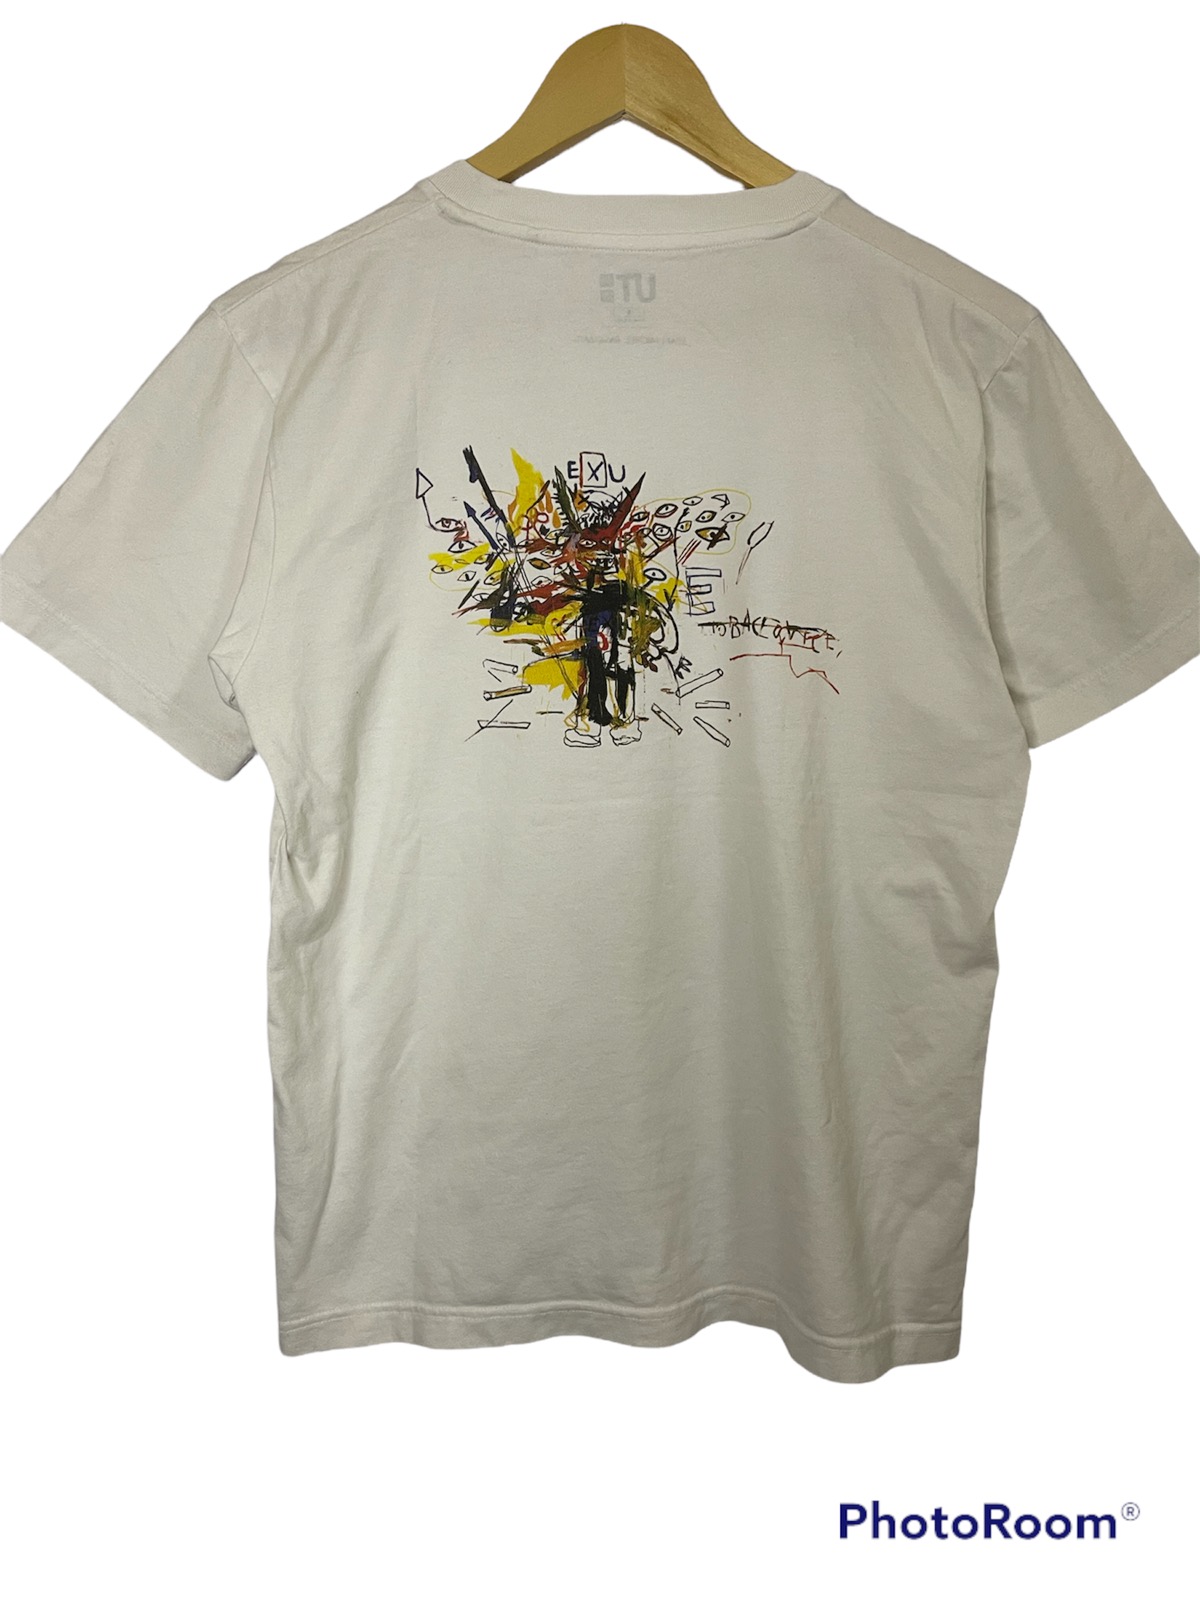 Jason - Vintage Jean Michel Basquiat Tshirt Pop Up Mirror Print - 1